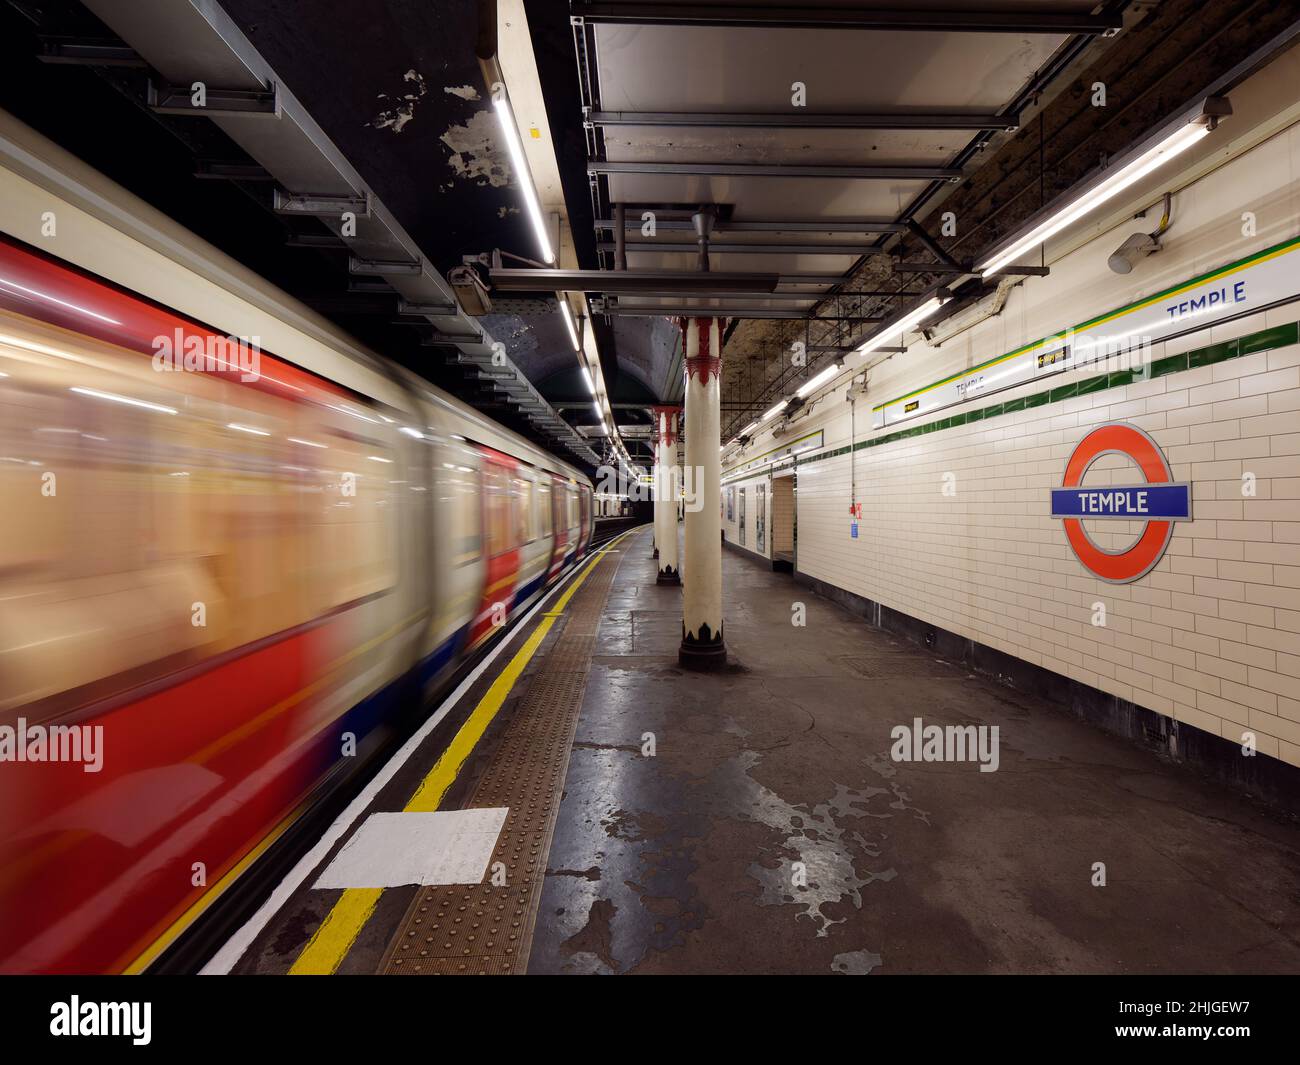 Londres, Grand Londres, Angleterre, janvier 5th 2022: Intérieur du Temple station de métro aka comme un train passe une plate-forme avec le flou de mouvement. Banque D'Images